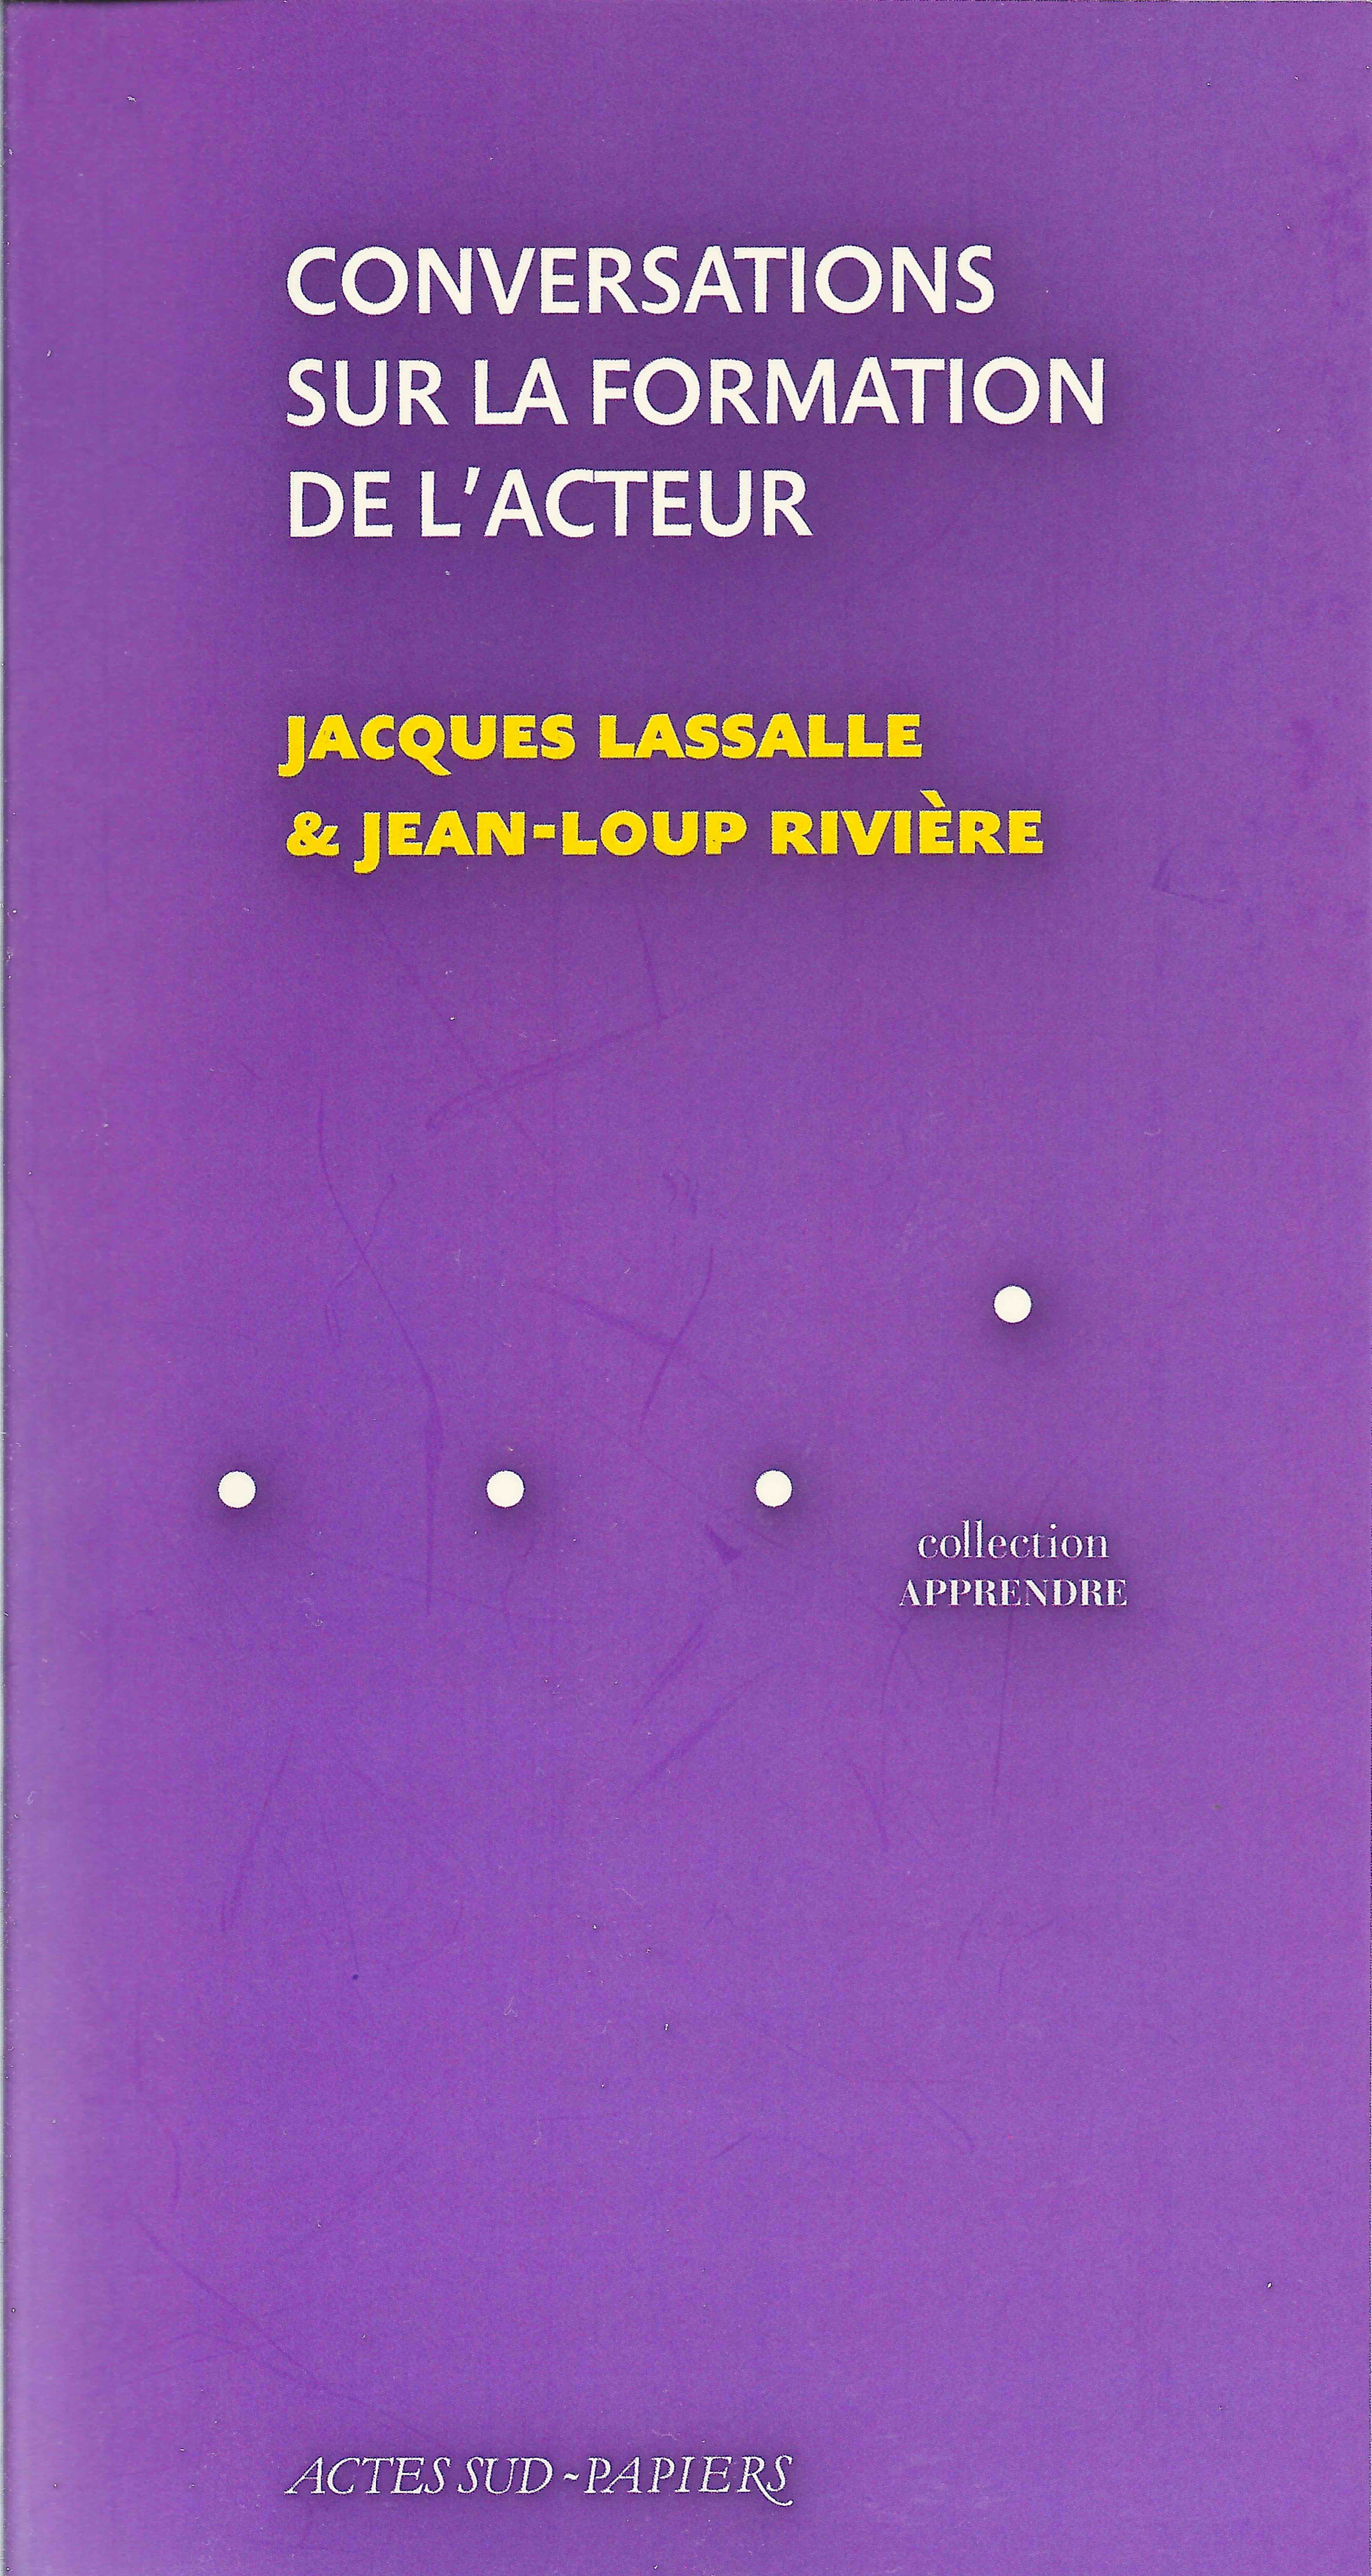 Conversations sur la formation de l’acteur, Jacques Lassalle, Jean-Loup Rivière, Actes Sud-Papiers